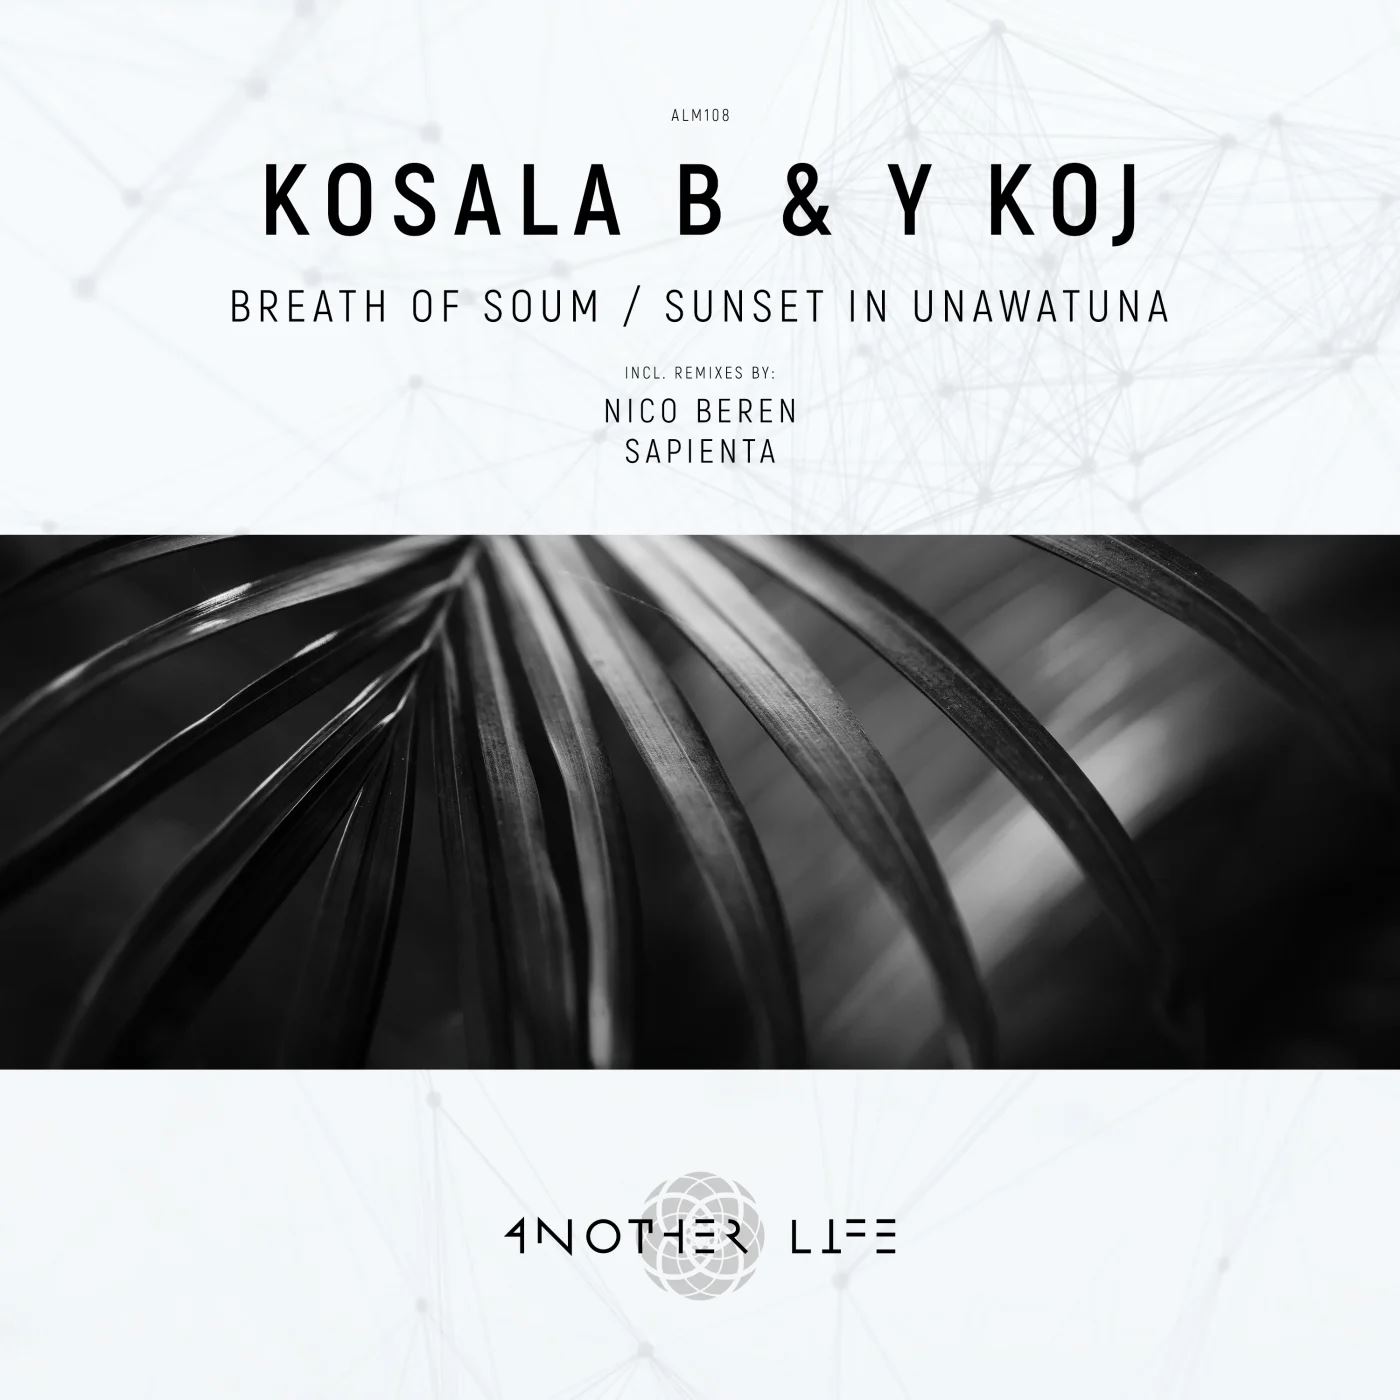 Kosala B & Y KOJ - Breath of Soum - Sunset in Unawatuna [ALM108]